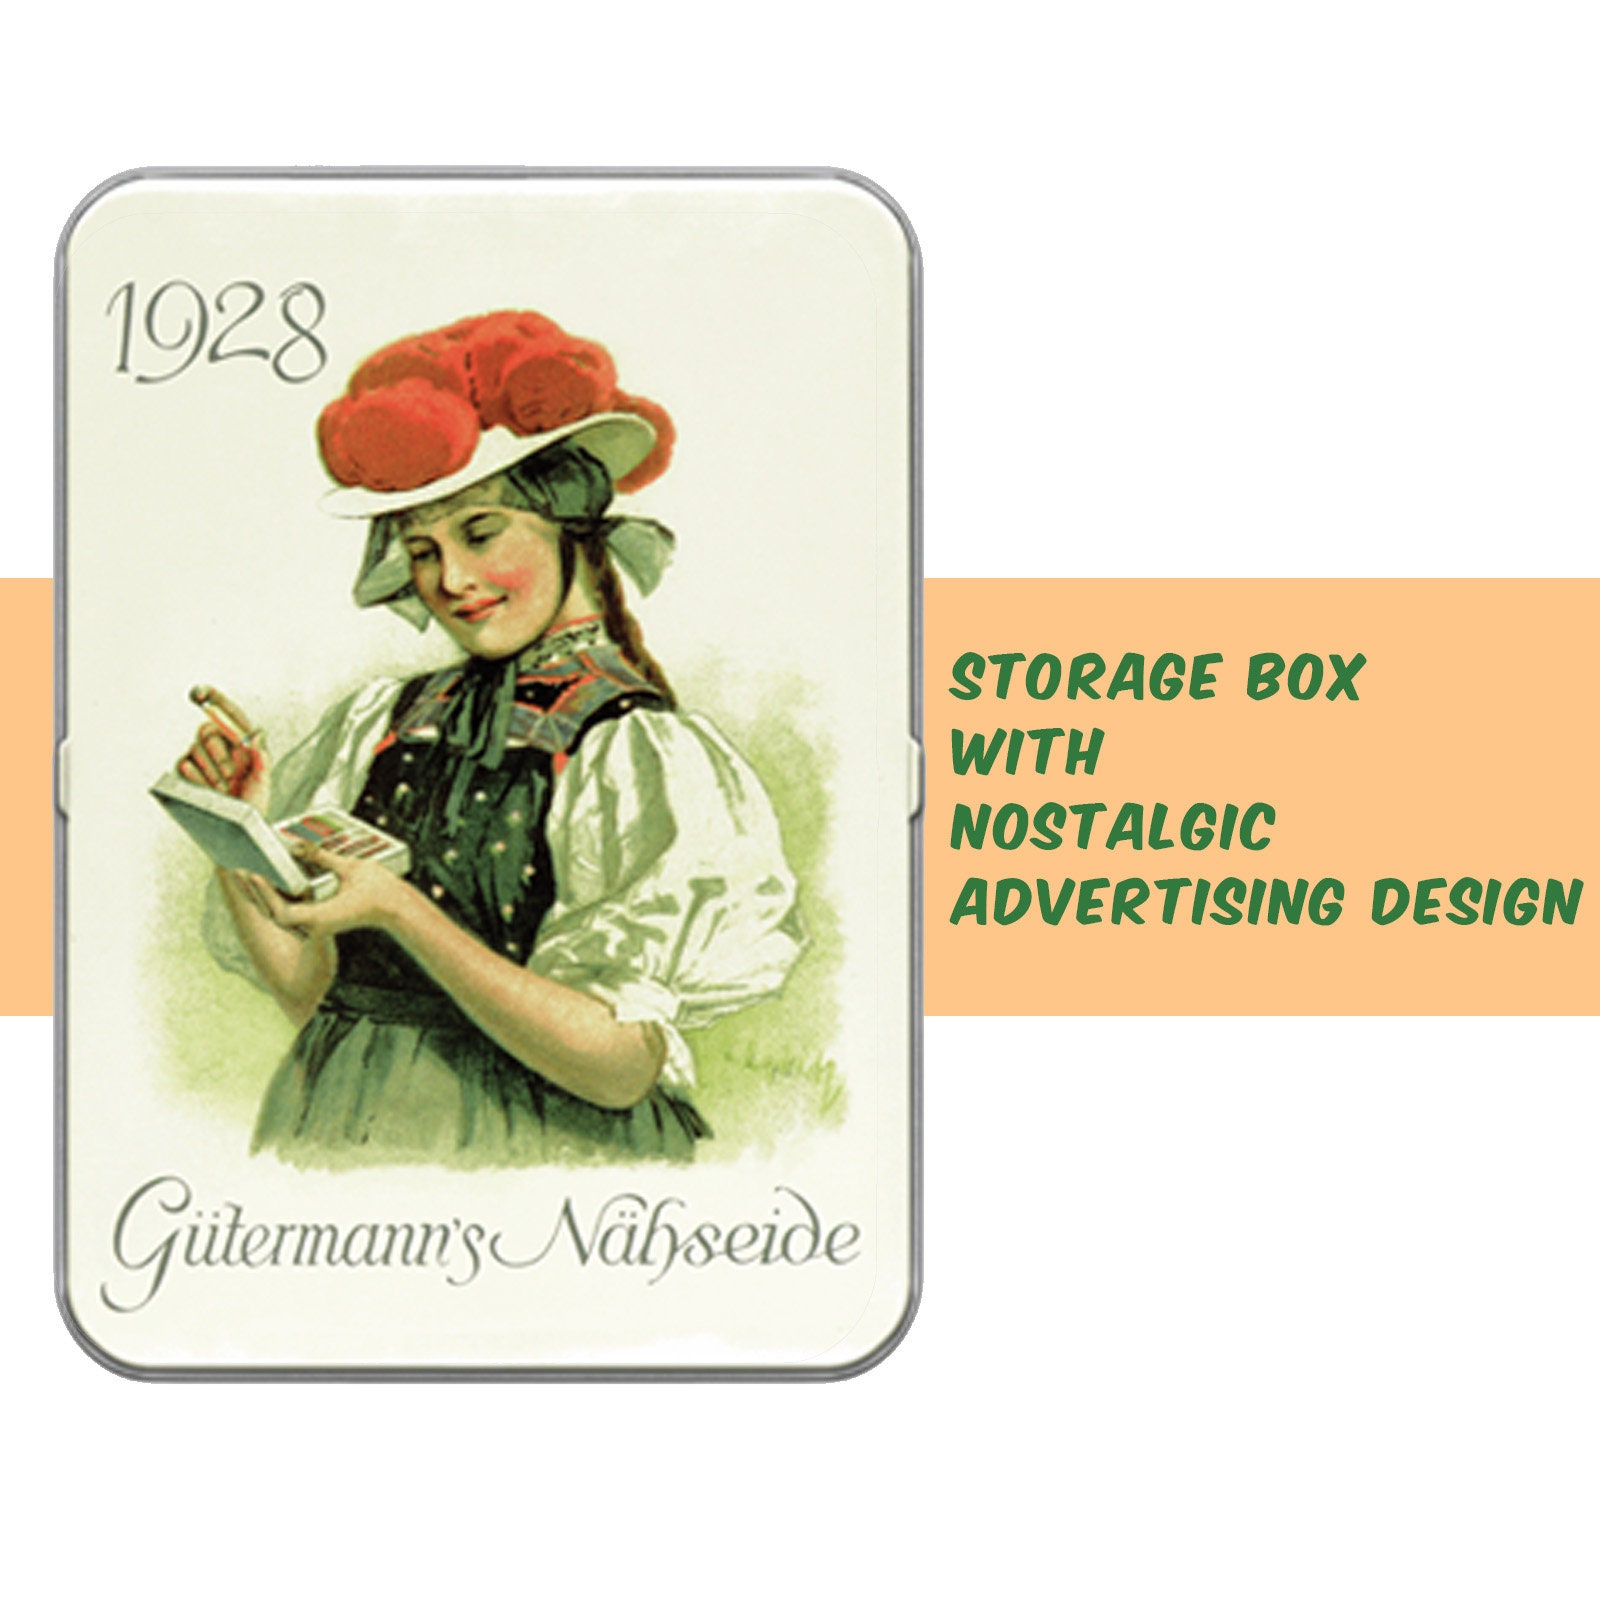 Pack de hilos Gütermann 1928